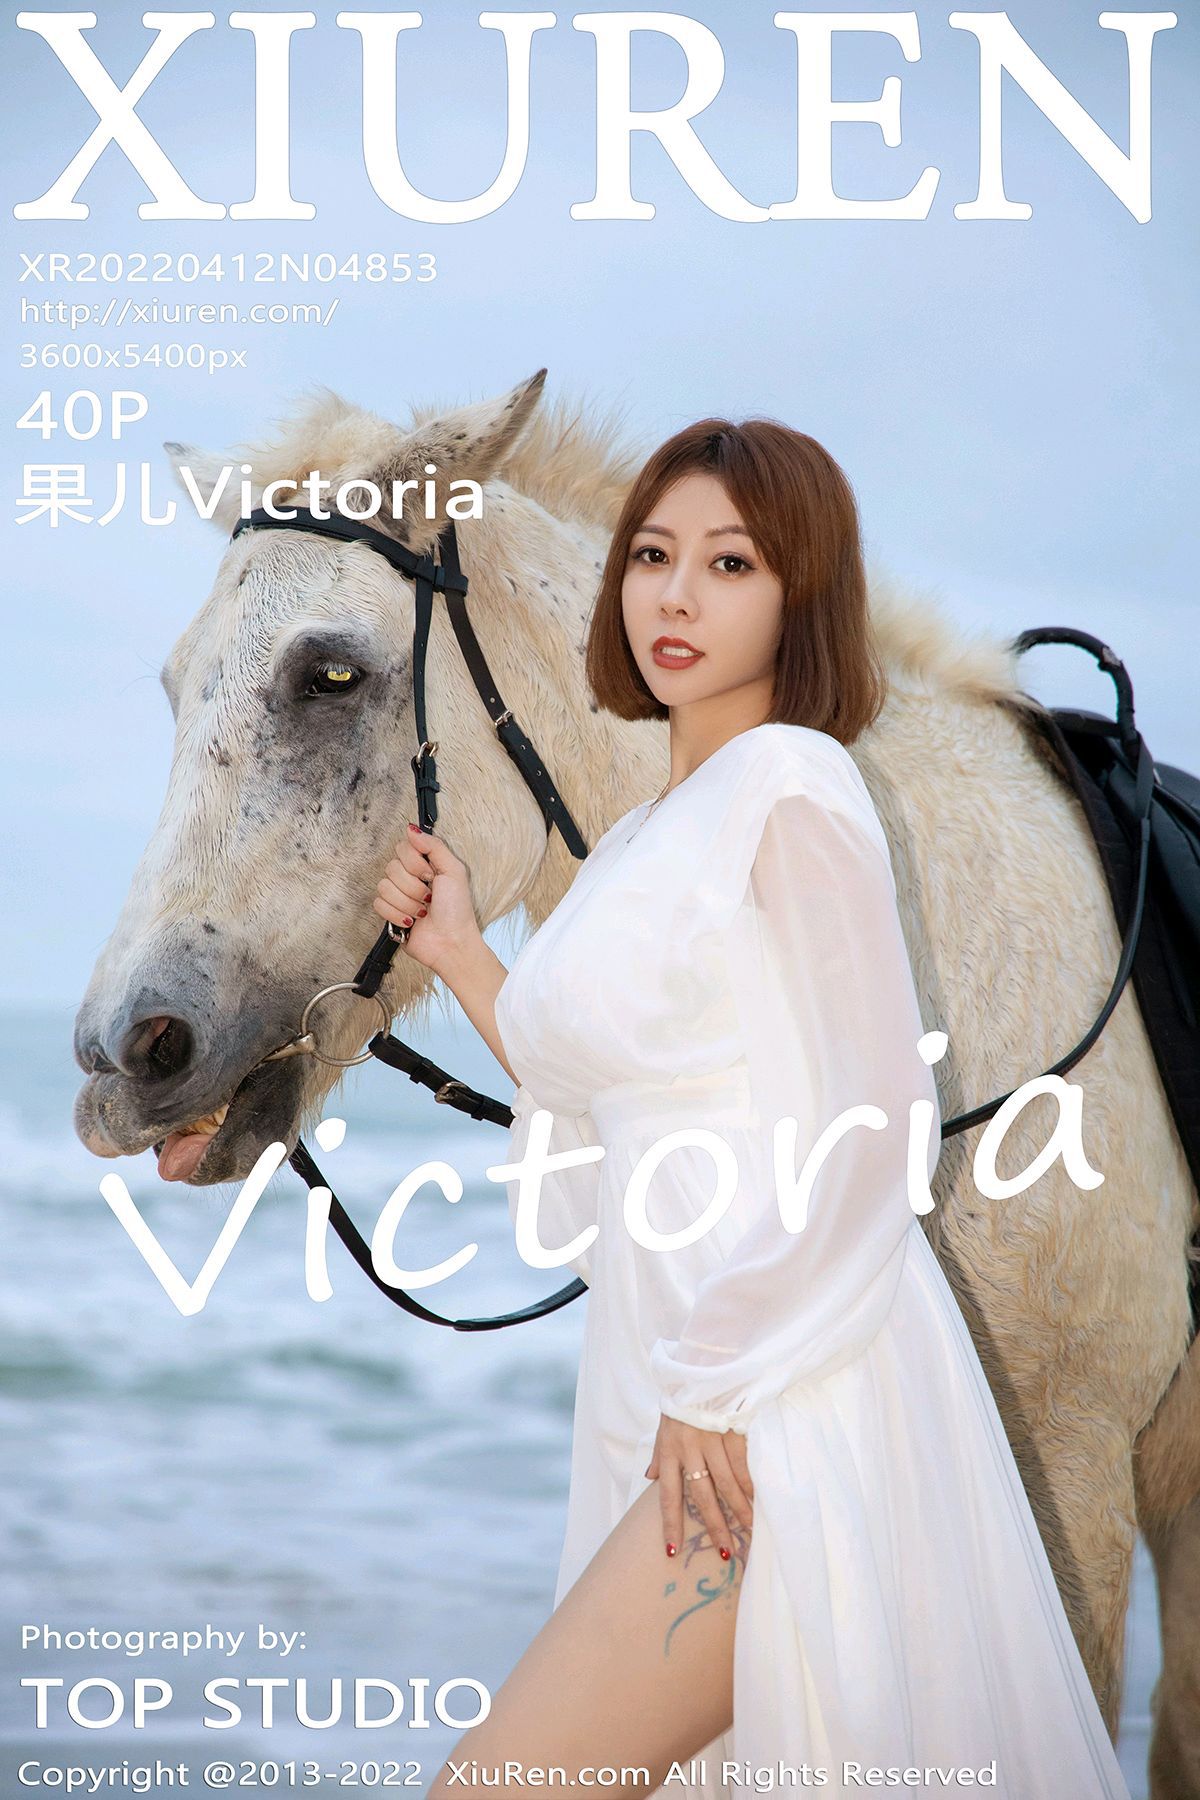 XIUREN秀人网美媛馆美女模特写真第No.4853期果儿Victoria (42)